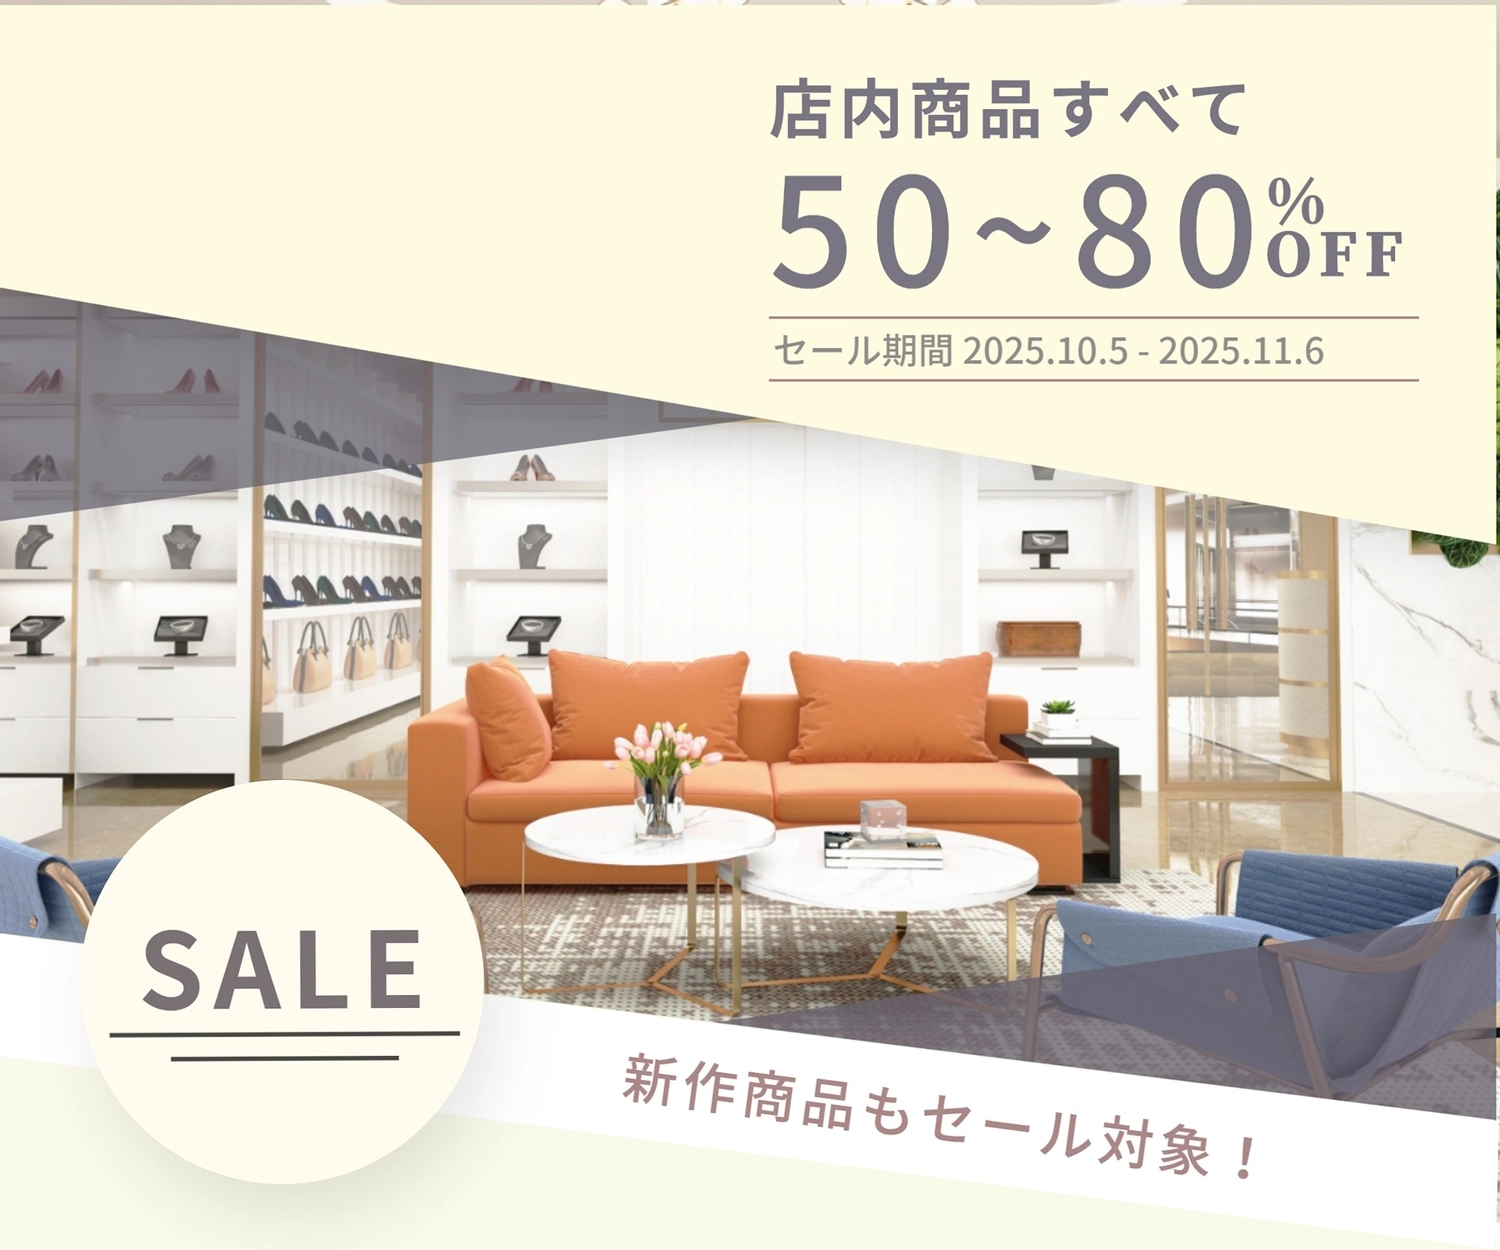 セールのバナー　家具, Hình chữ nhật, Tất cả các sản phẩm trong cửa hàng, Thời gian giới hạn, banner mẫu